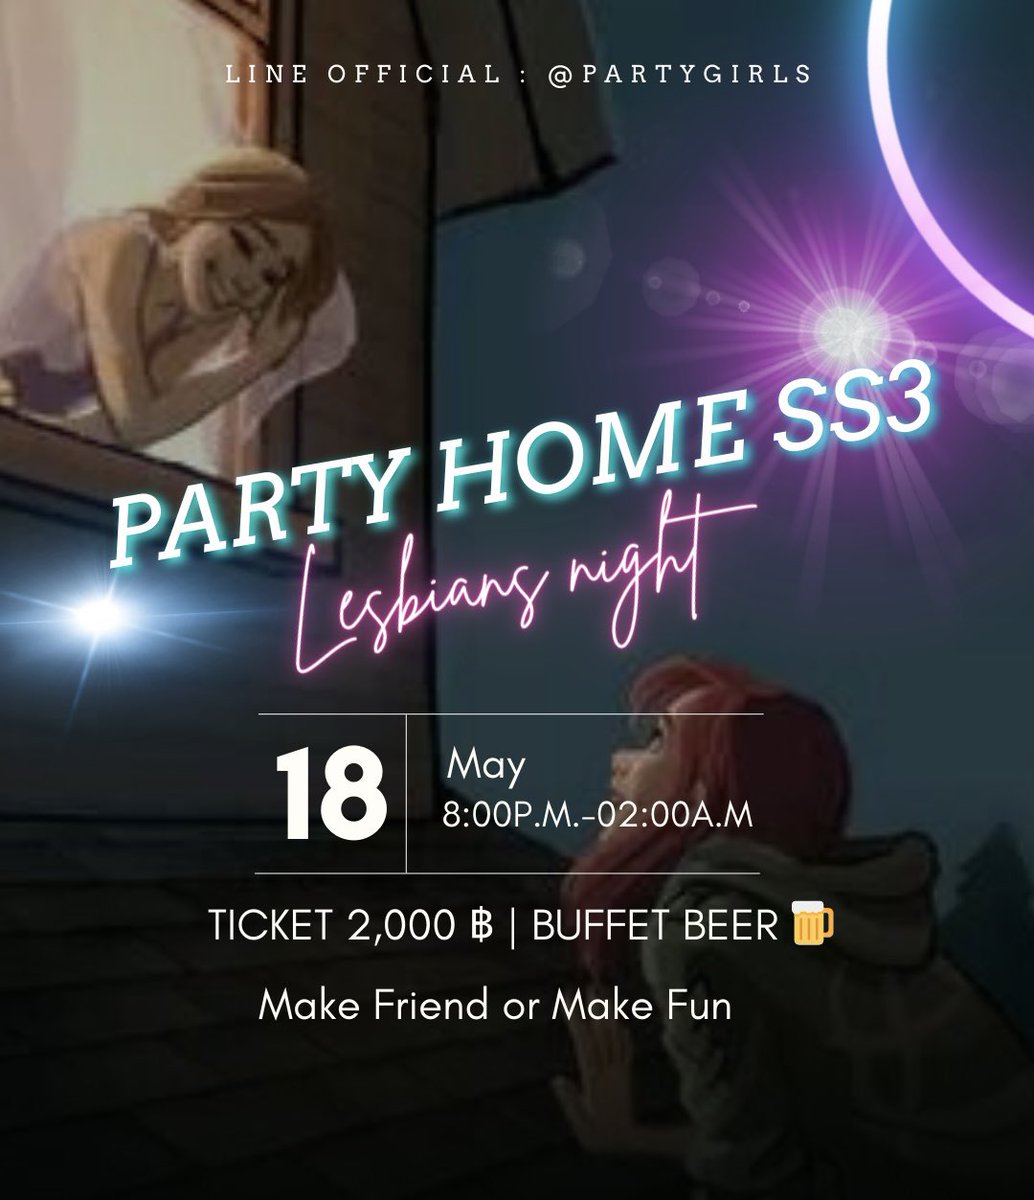 Party Home ss3
ปีนขึ้นบ้านไปเย็ด หยอก🤣
เพราะนี้คือ ปาร์ตี้โฮม 🏠
ที่แรกที่เดียวในไทย 🇹🇭
คนแรกที่ทำจำไว้ ชื่อ โบว์ 

Get ticket ได้แล้ววันนี้ คนนอกกลุ่มในไลน์แอค มีส่วนลด 20%
คนในกลุ่มราคาพิเศษเช็คโน๊ตกลุ่ม
แล้วเจอกันสาวๆ

#เลสเบี้ยน #เลสเบี้ยนโสด #ทอม #ทรานส์ #LGBTQ #หญิงรักหญิง